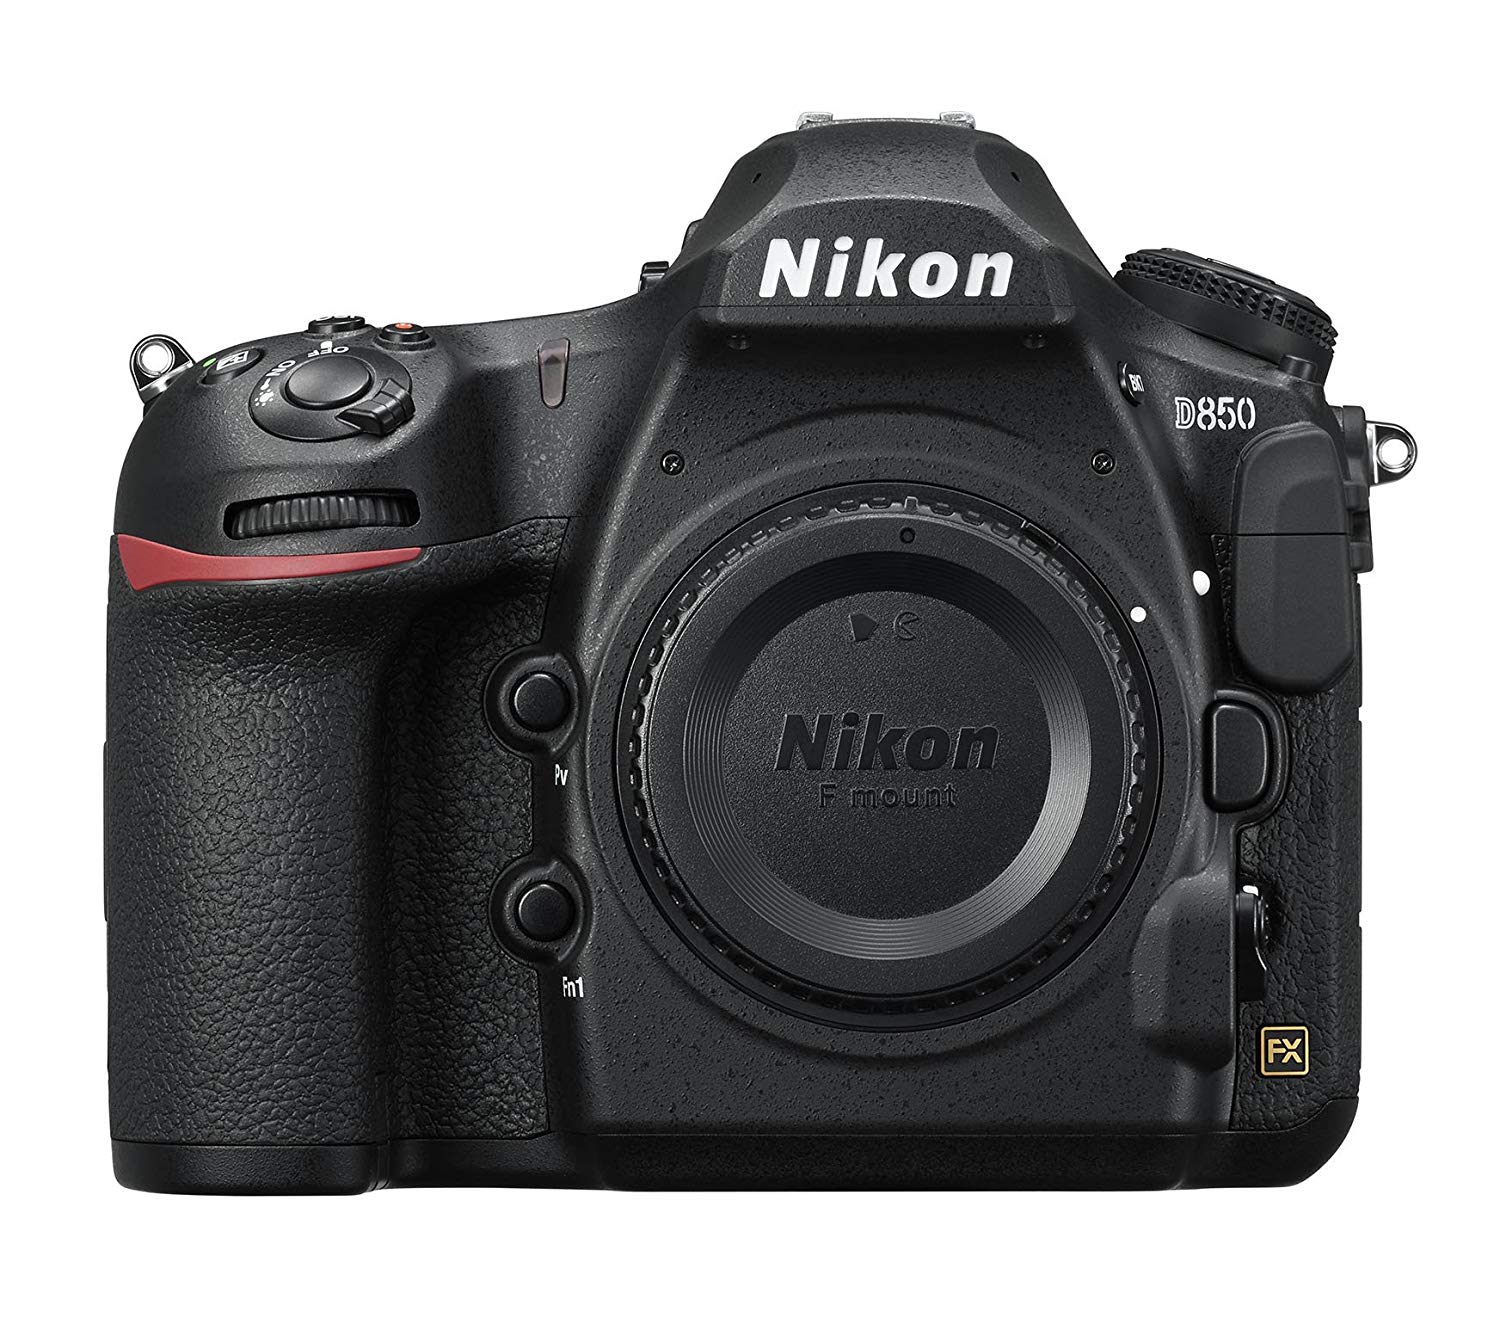 Nikon D850 FX- प्रारूप डिजिटल एसएलआर कैमरा बॉडी...